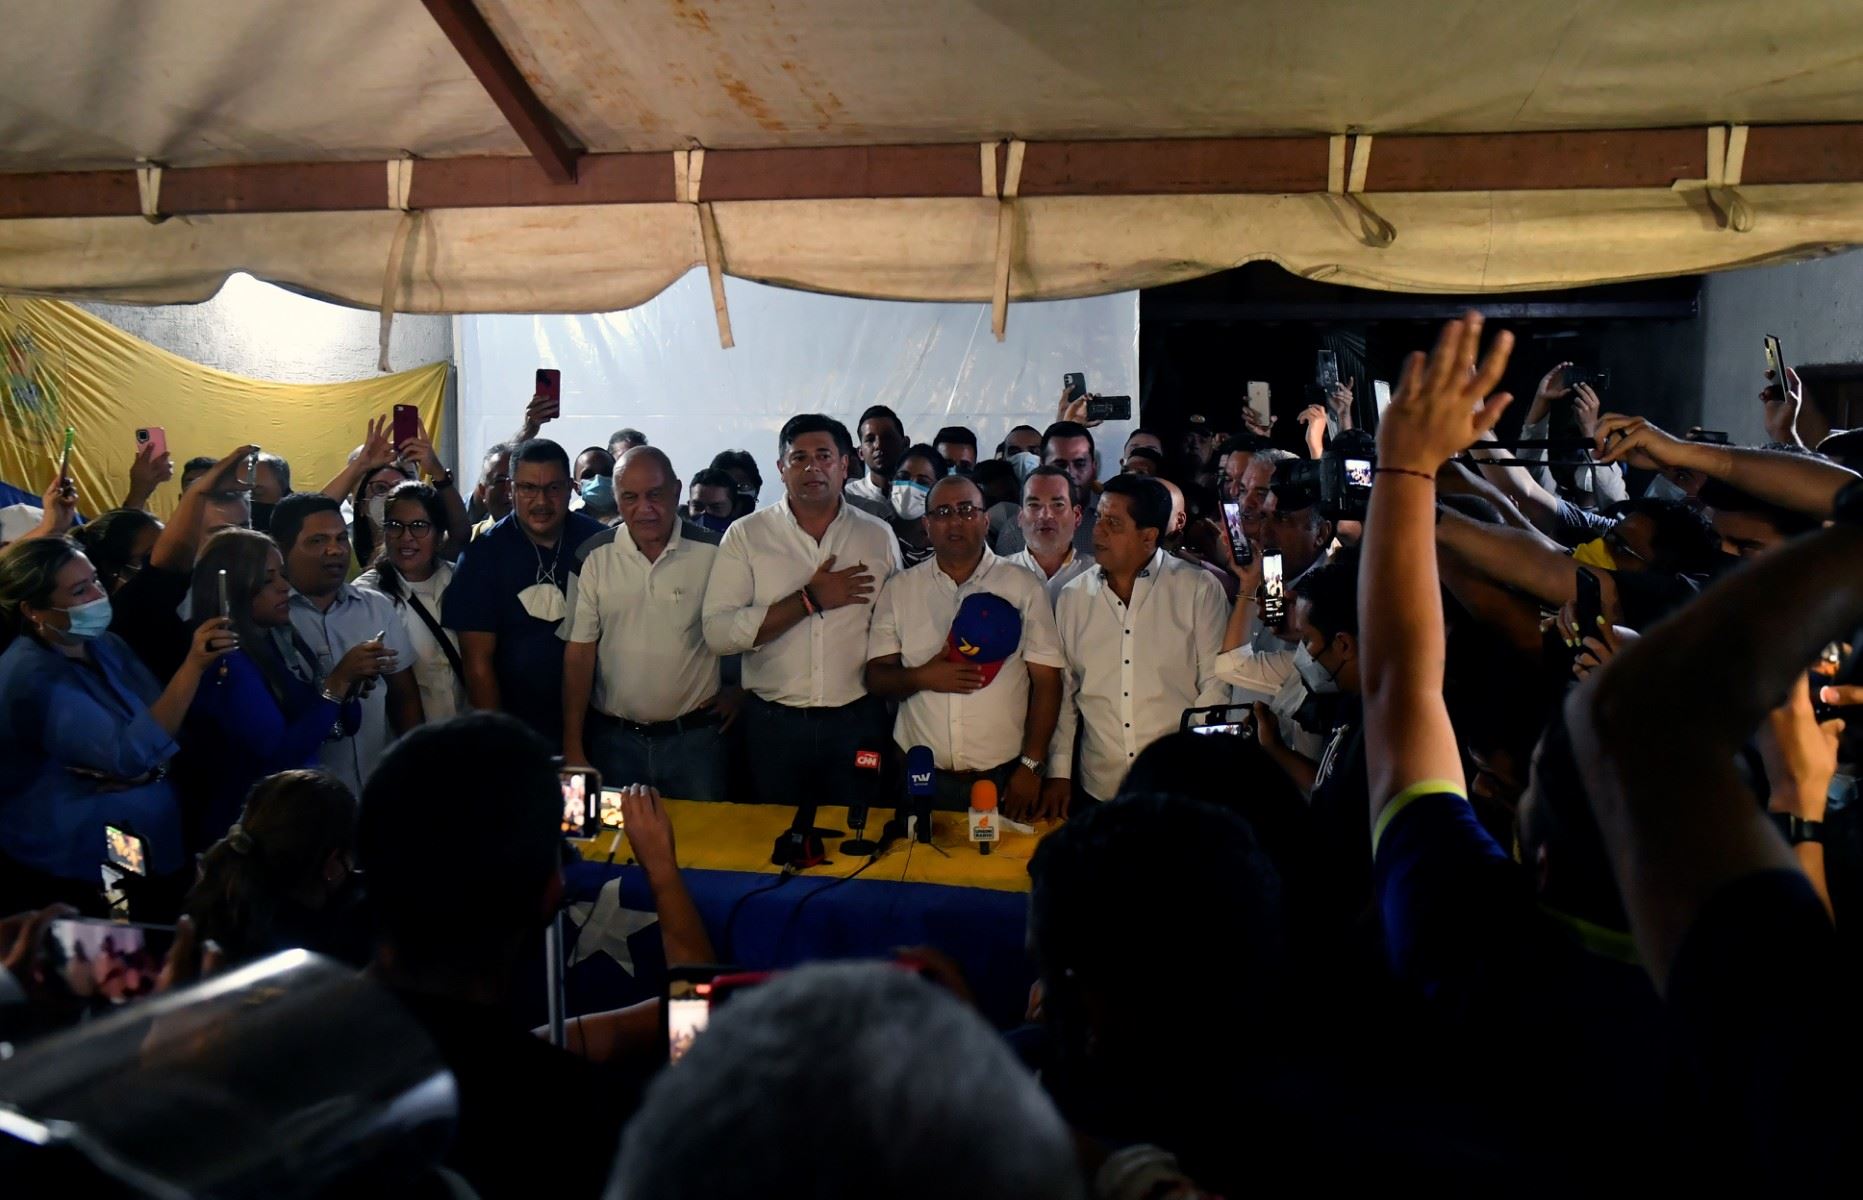 في مسقط رأس تشافيز .. انتصار تاريخي للمعارضة الفنزويلية